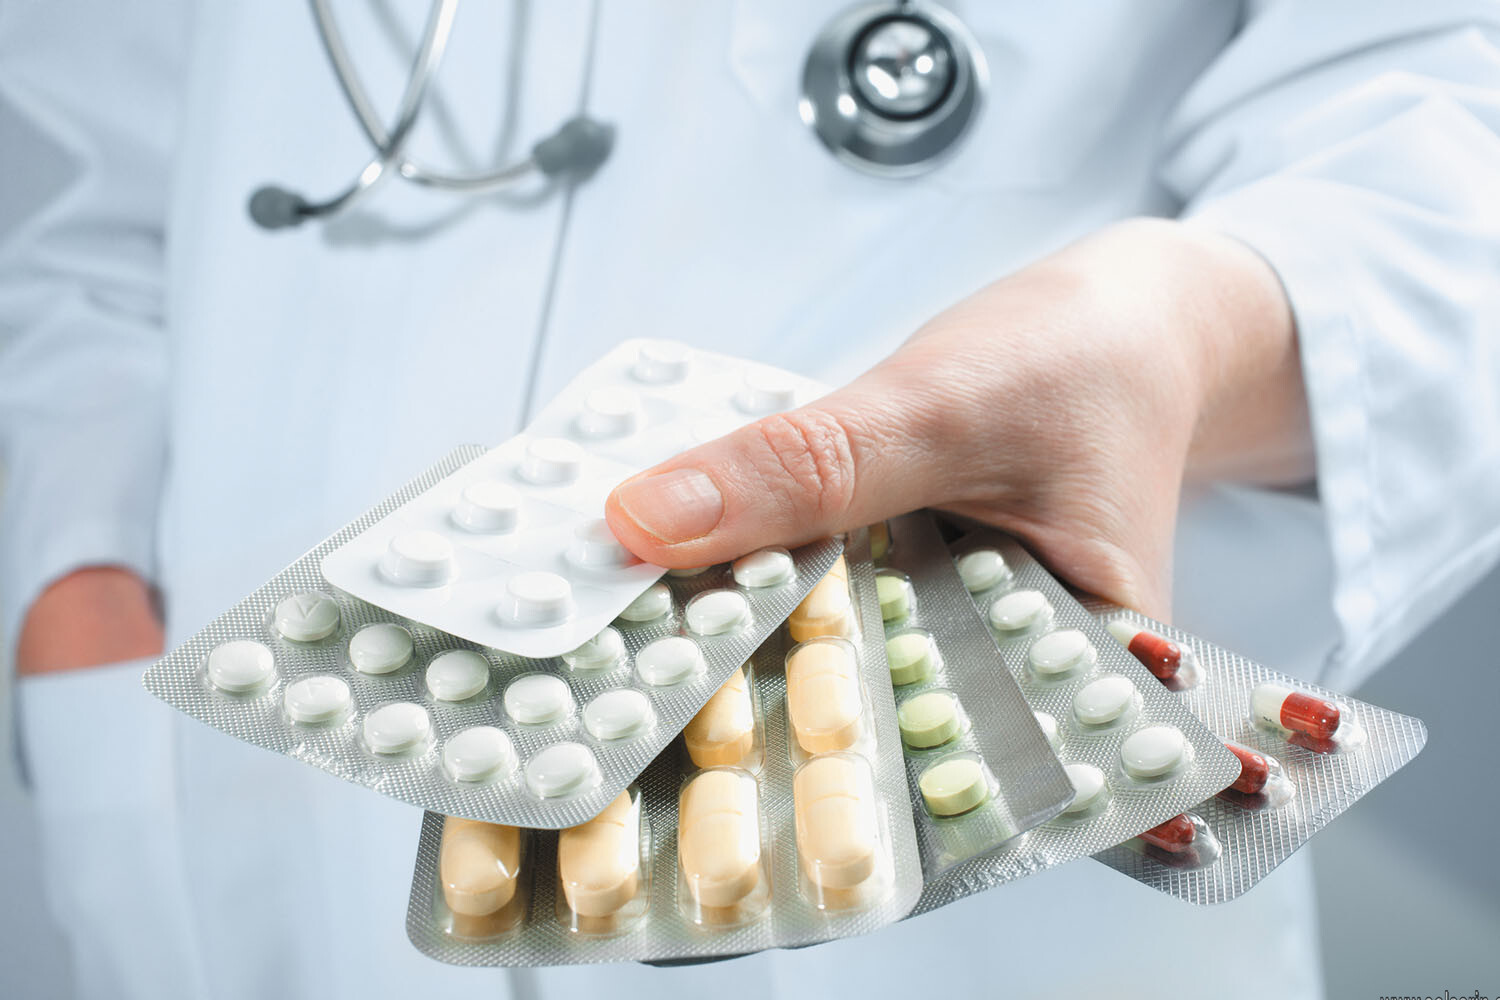 urgent care clinics antibiotics